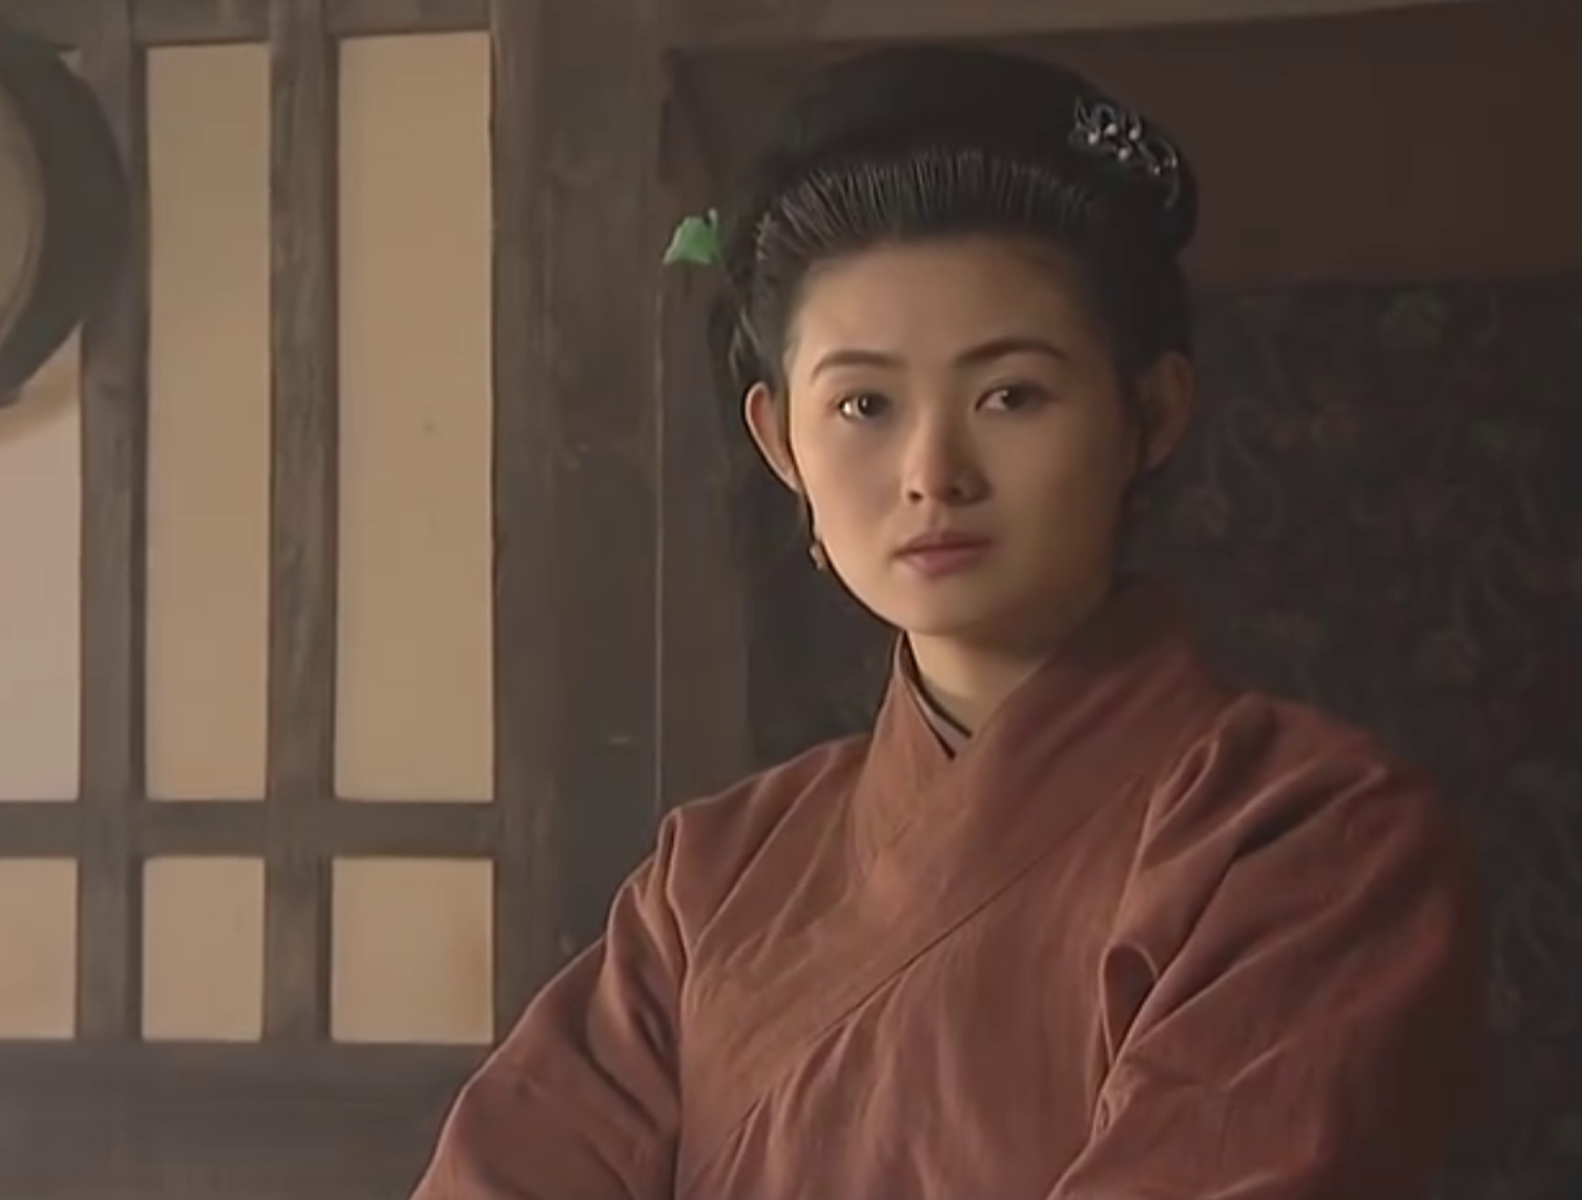 王思懿在《水浒传》中饰演潘金莲,她诠释了这个最经典